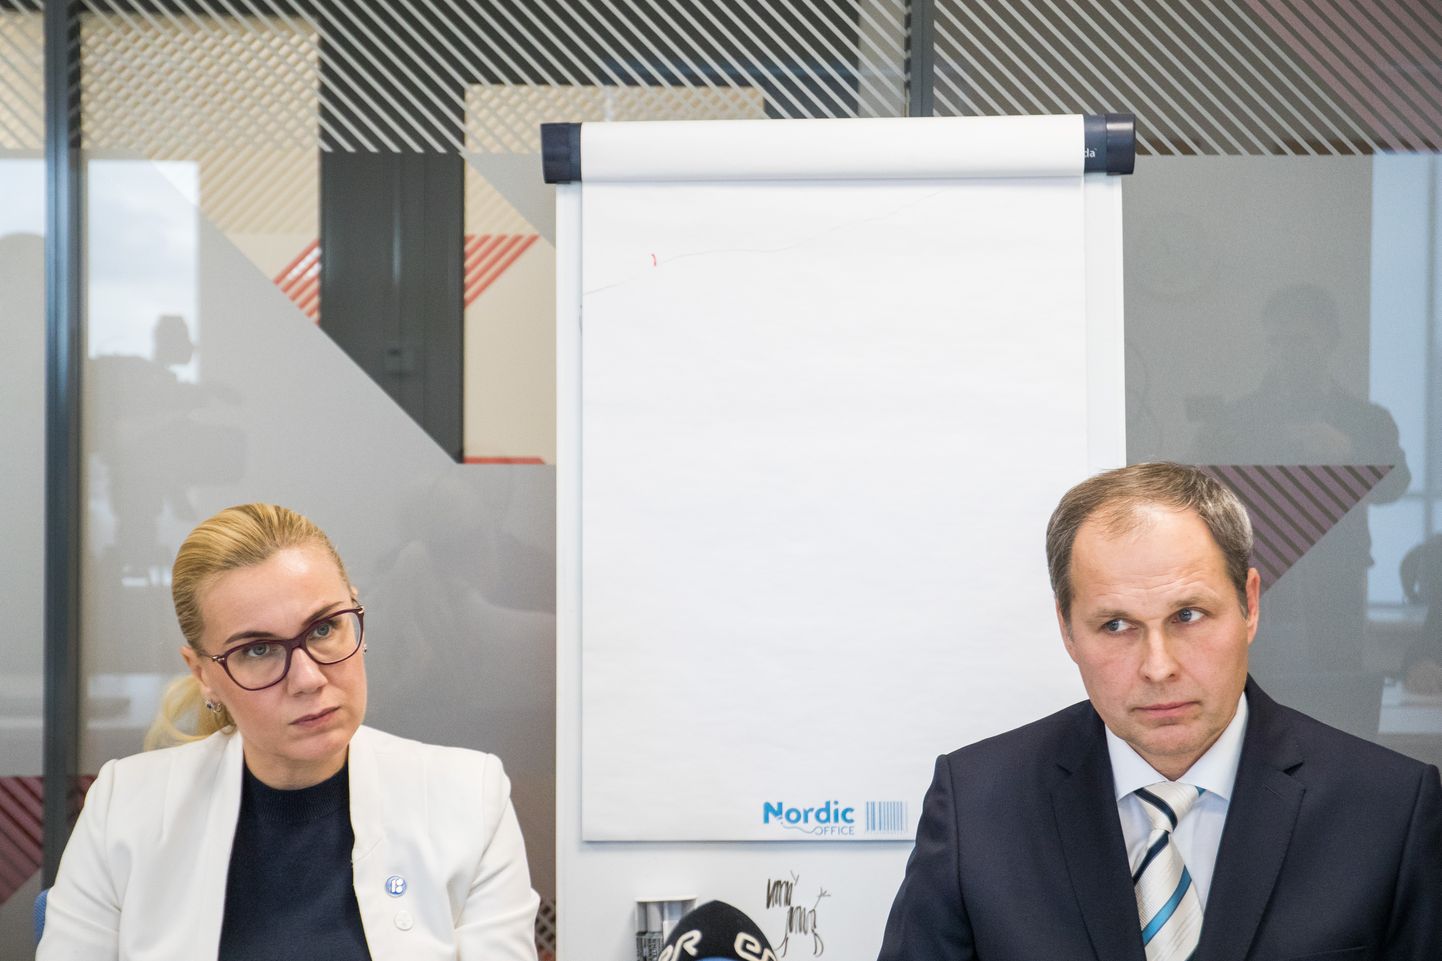 Majandusminister Kadri Simson ja Tallinna Sadama juht Valdo Kalm andsid pressikonverentsi seoses valitsuse otsusega emiteerida Tallinna Sadama aktsiaid Tallinna Börsil.